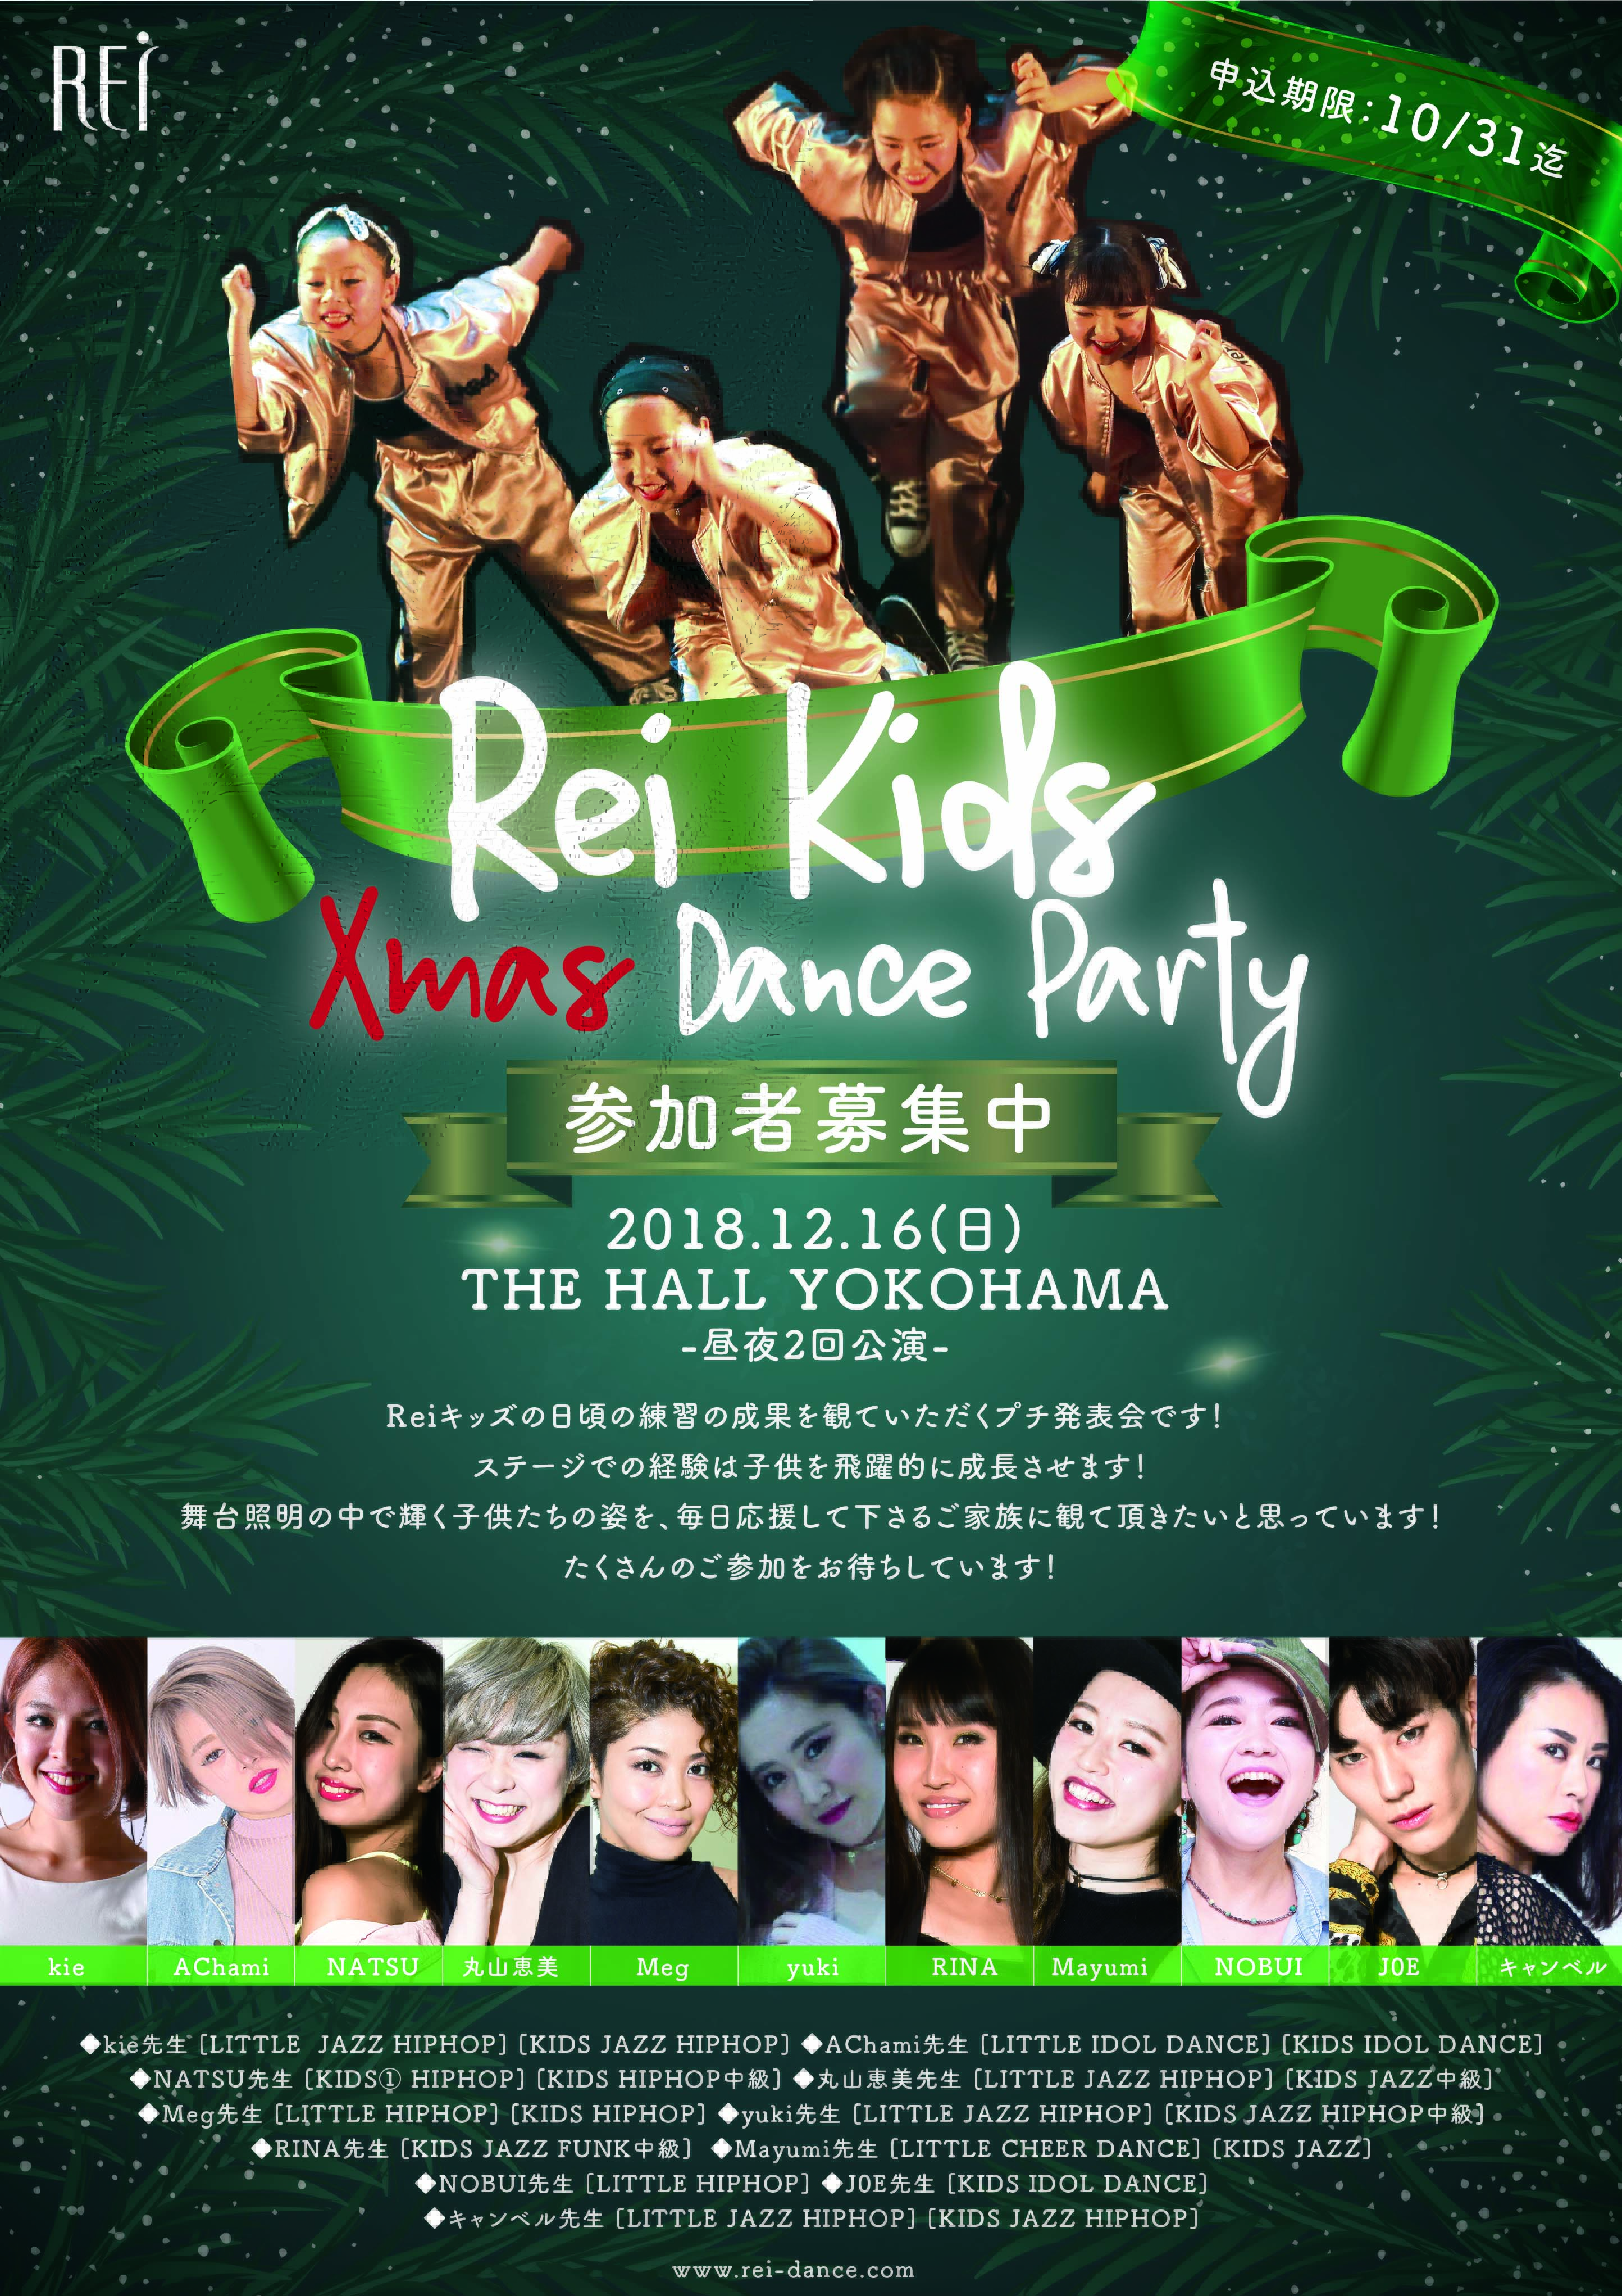 記事「Rei Kids Xmas Dance Party」の画像